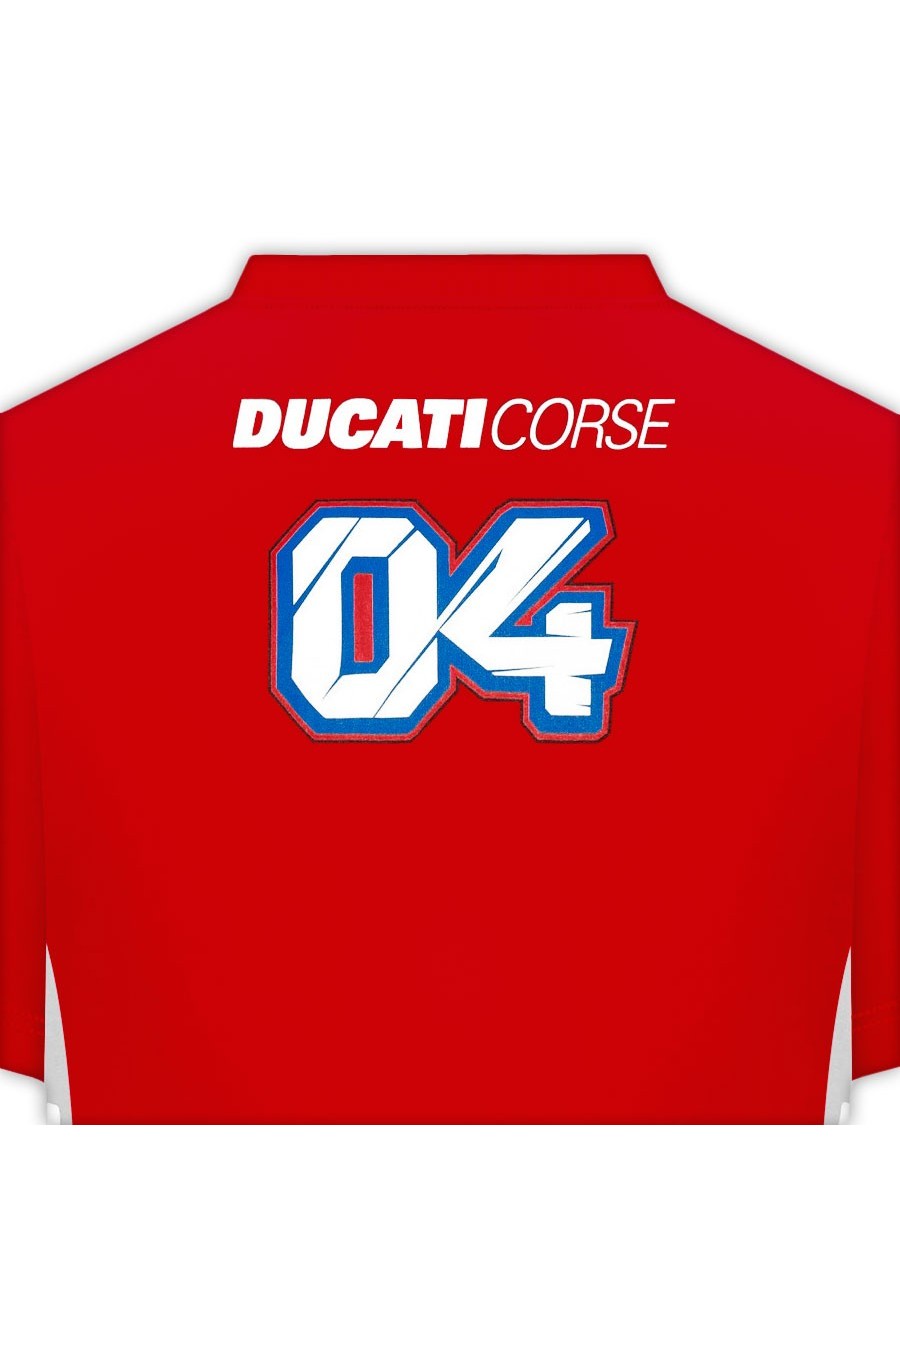 Maglietta Andrea Dovizioso 04 Ducati